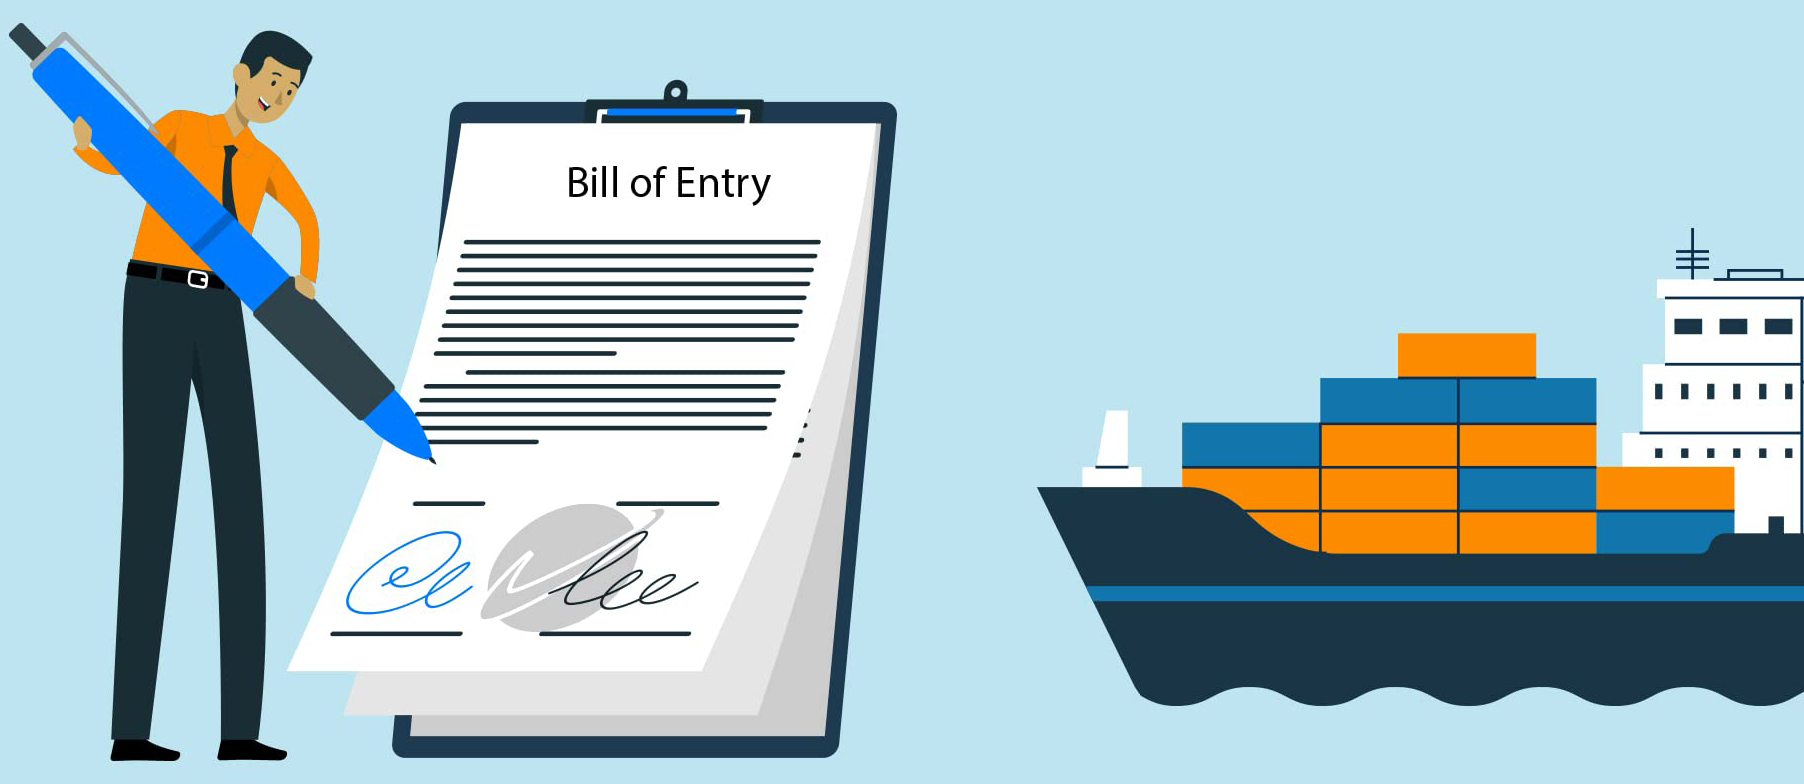 بارنامه گمرکی Bill of Entry (BOE)